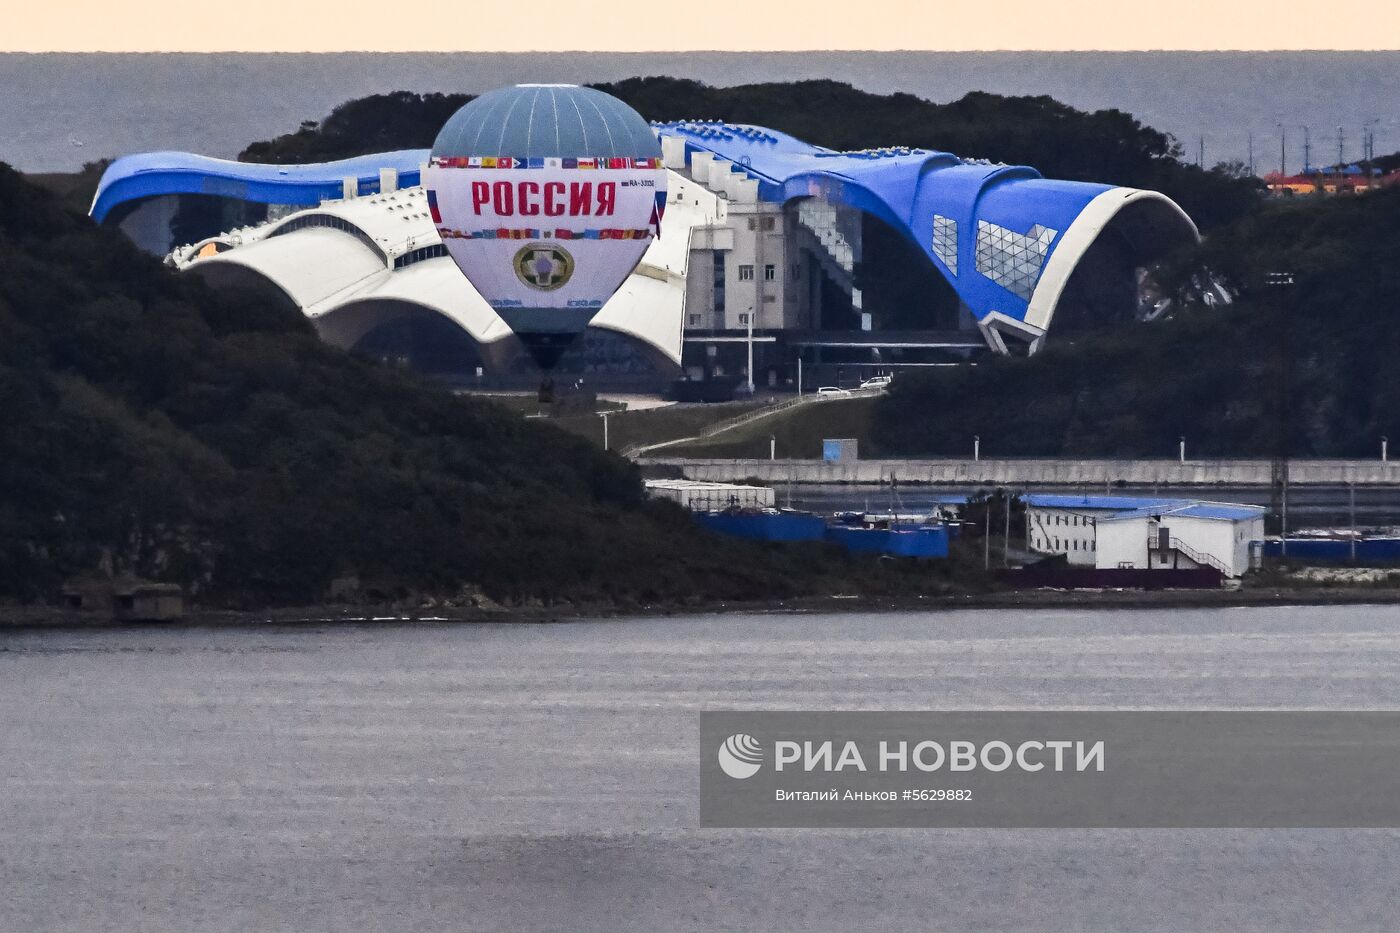 Тепловой аэростат "Россия" совершил перелет через пролив Босфор Восточный